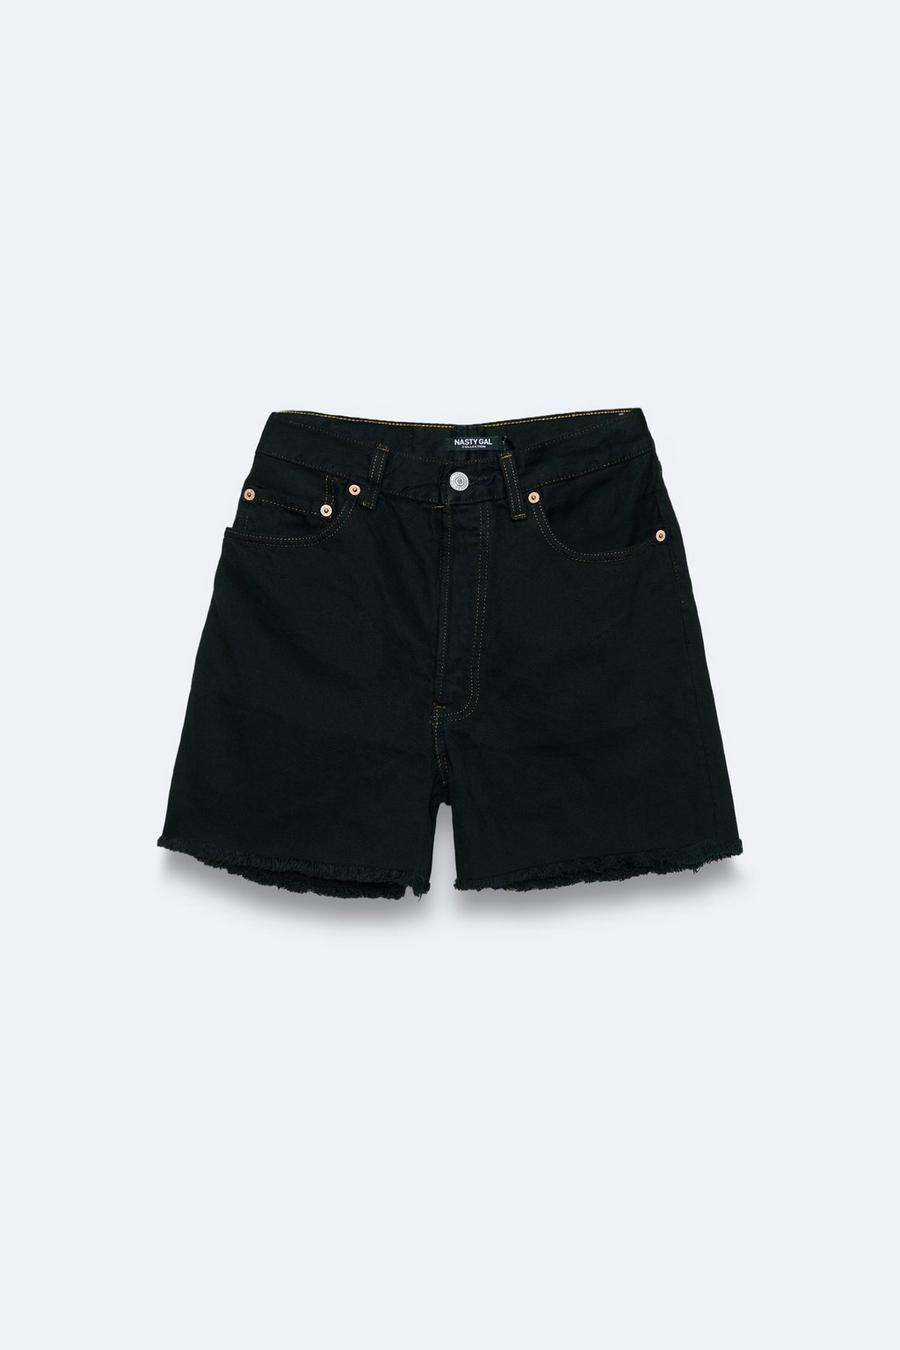 Vintage Reclaimed Branded Denim Shorts